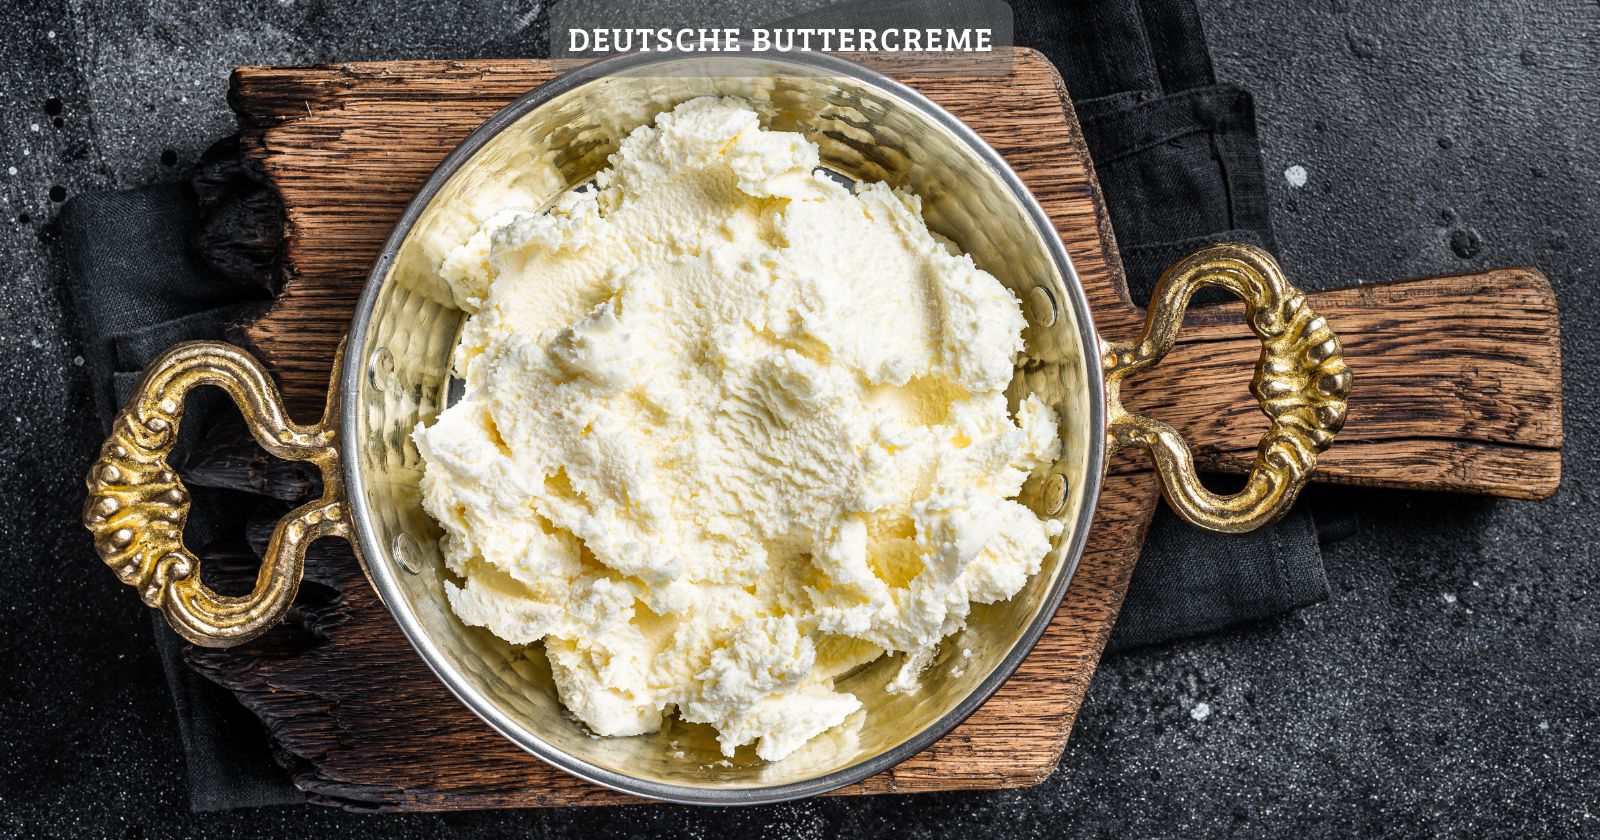 Deutsche buttercreme